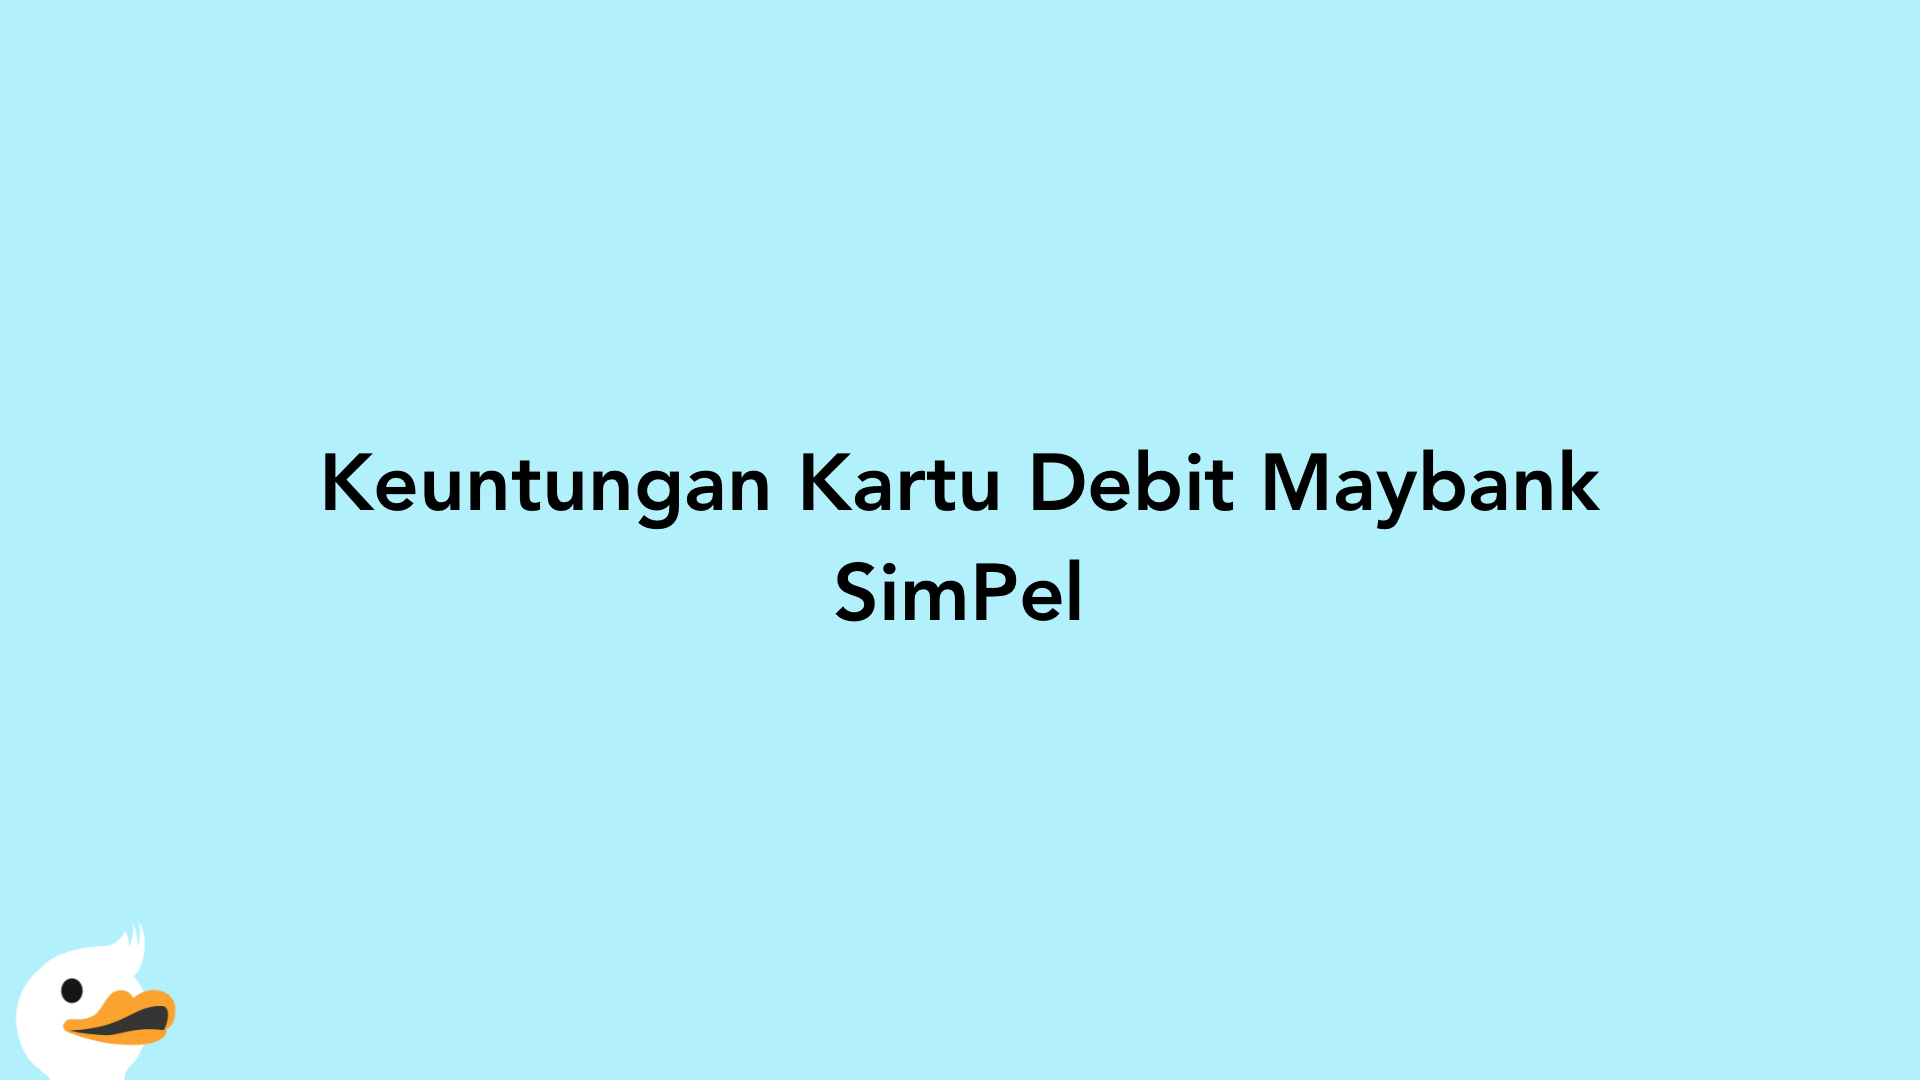 Keuntungan Kartu Debit Maybank SimPel